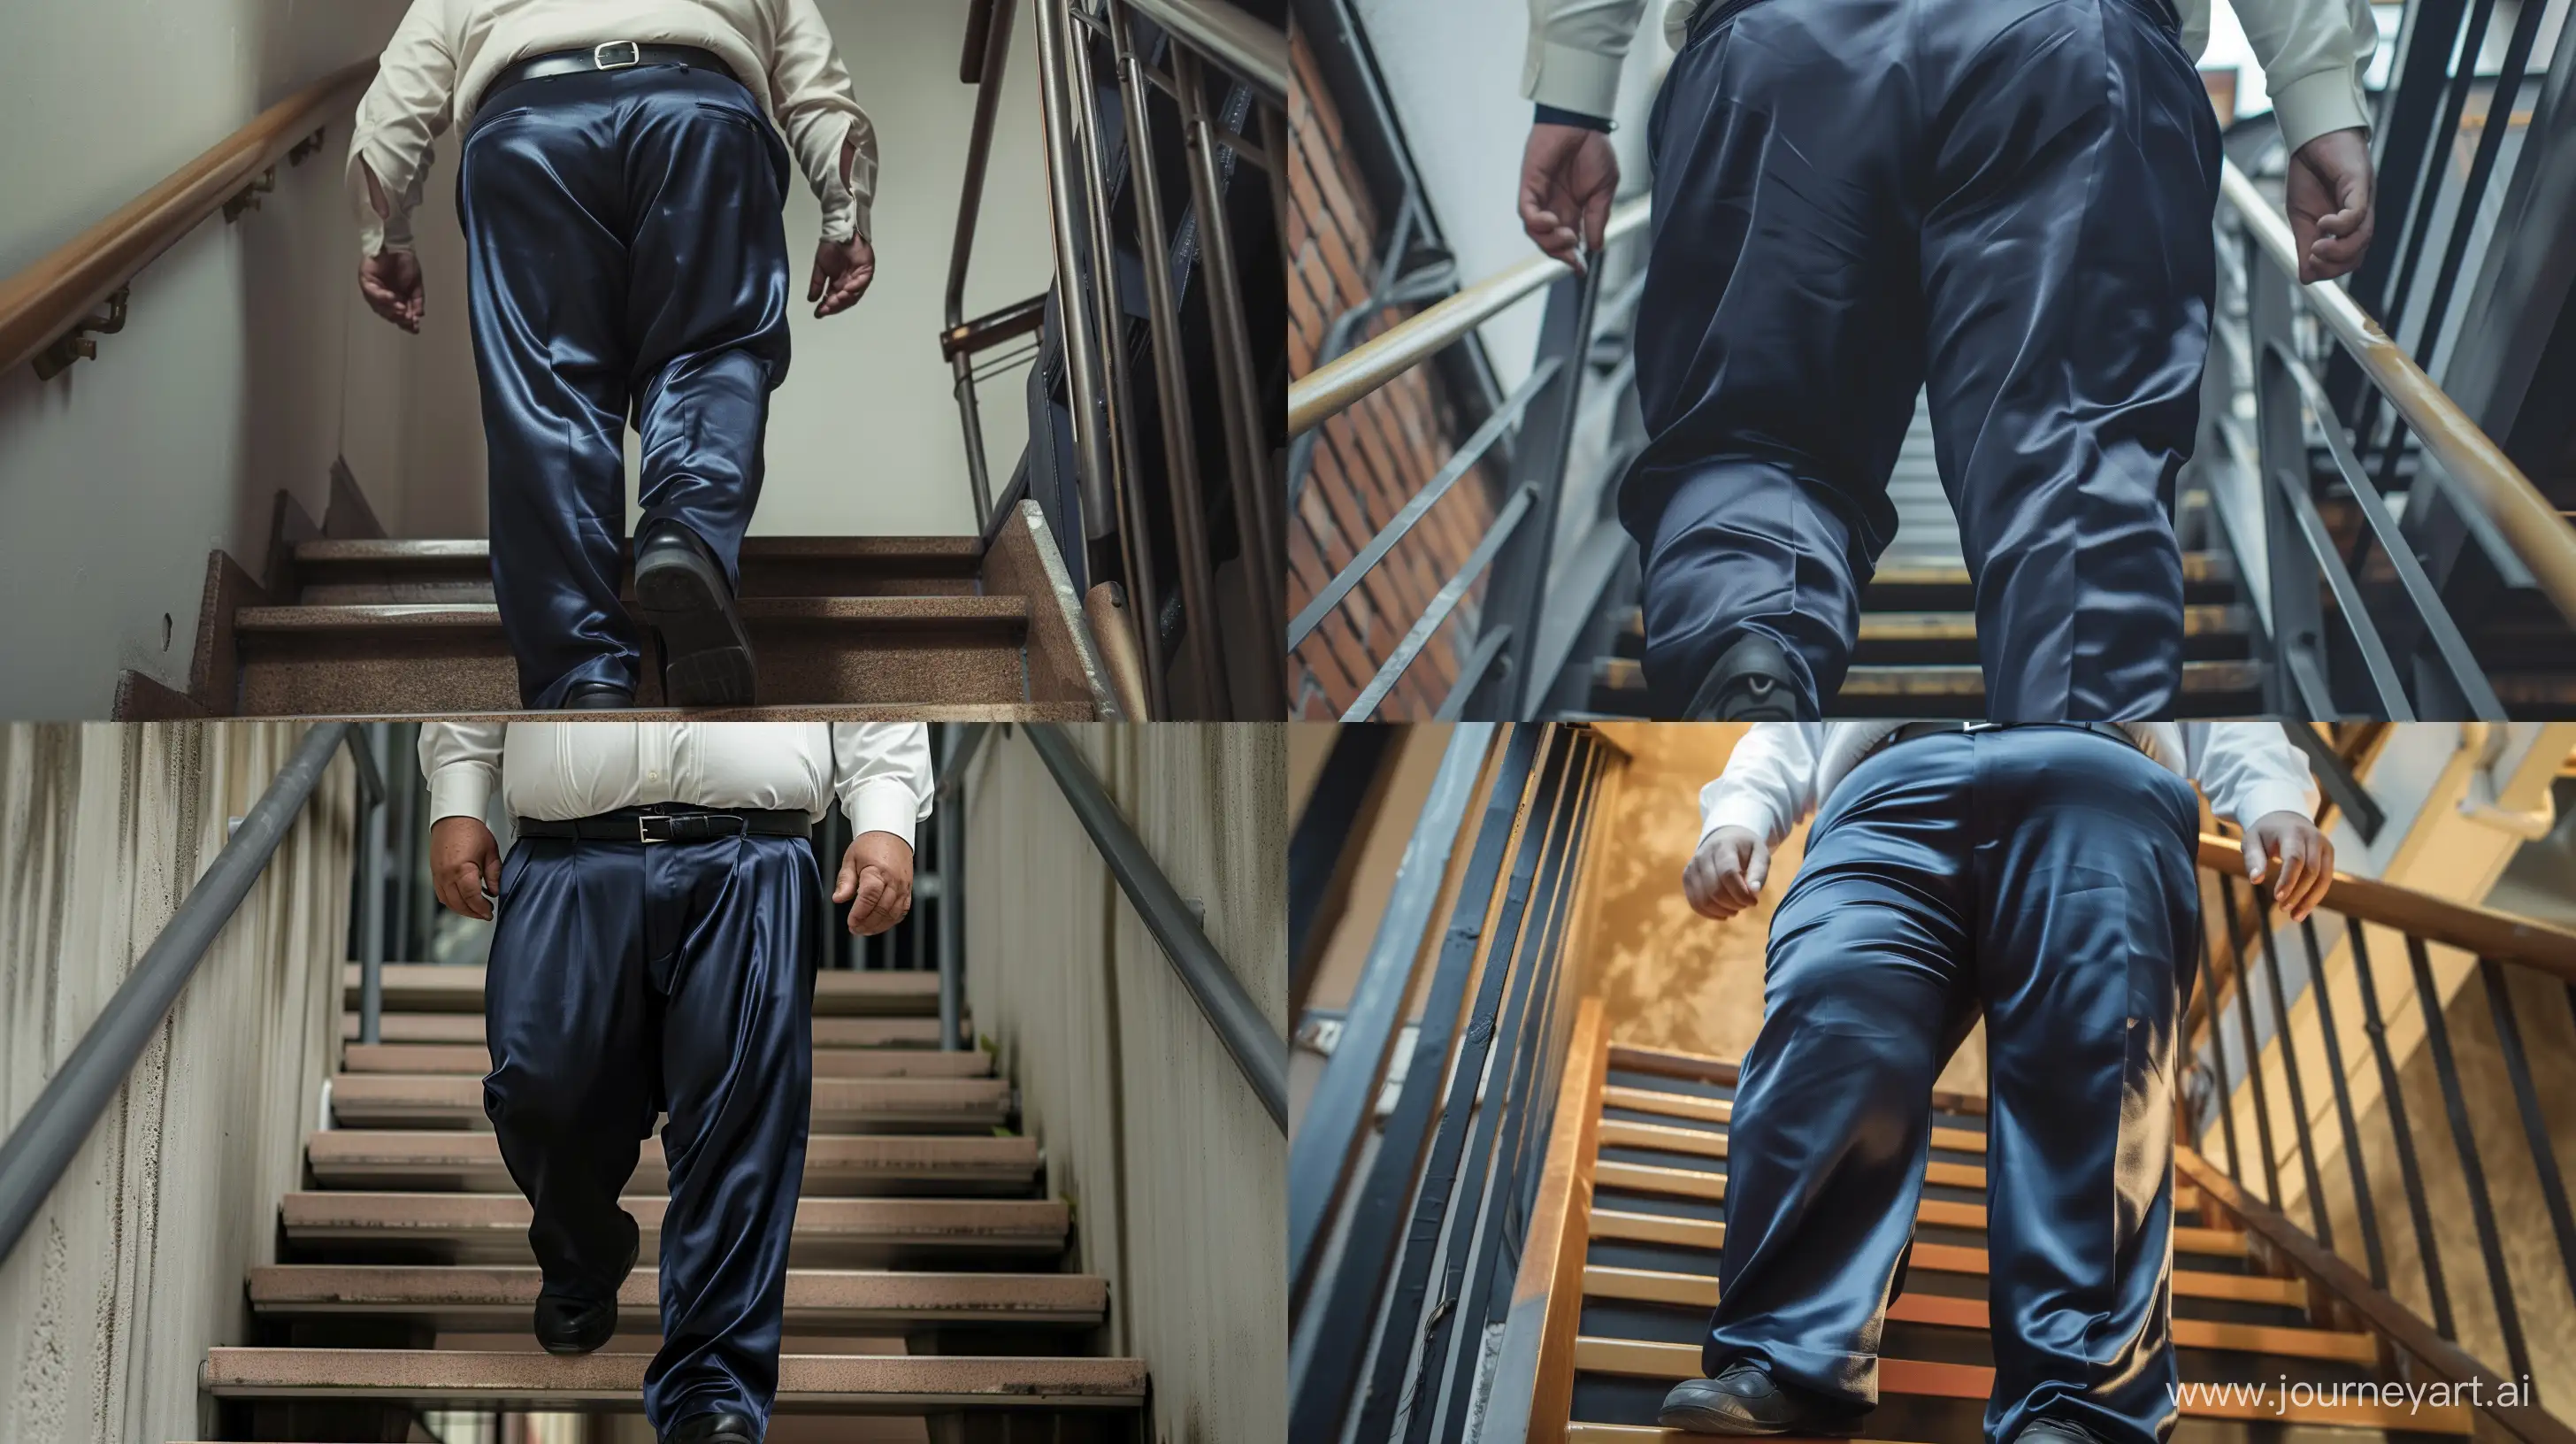 Elderly-Businessman-Climbing-Stairs-in-Formal-Attire